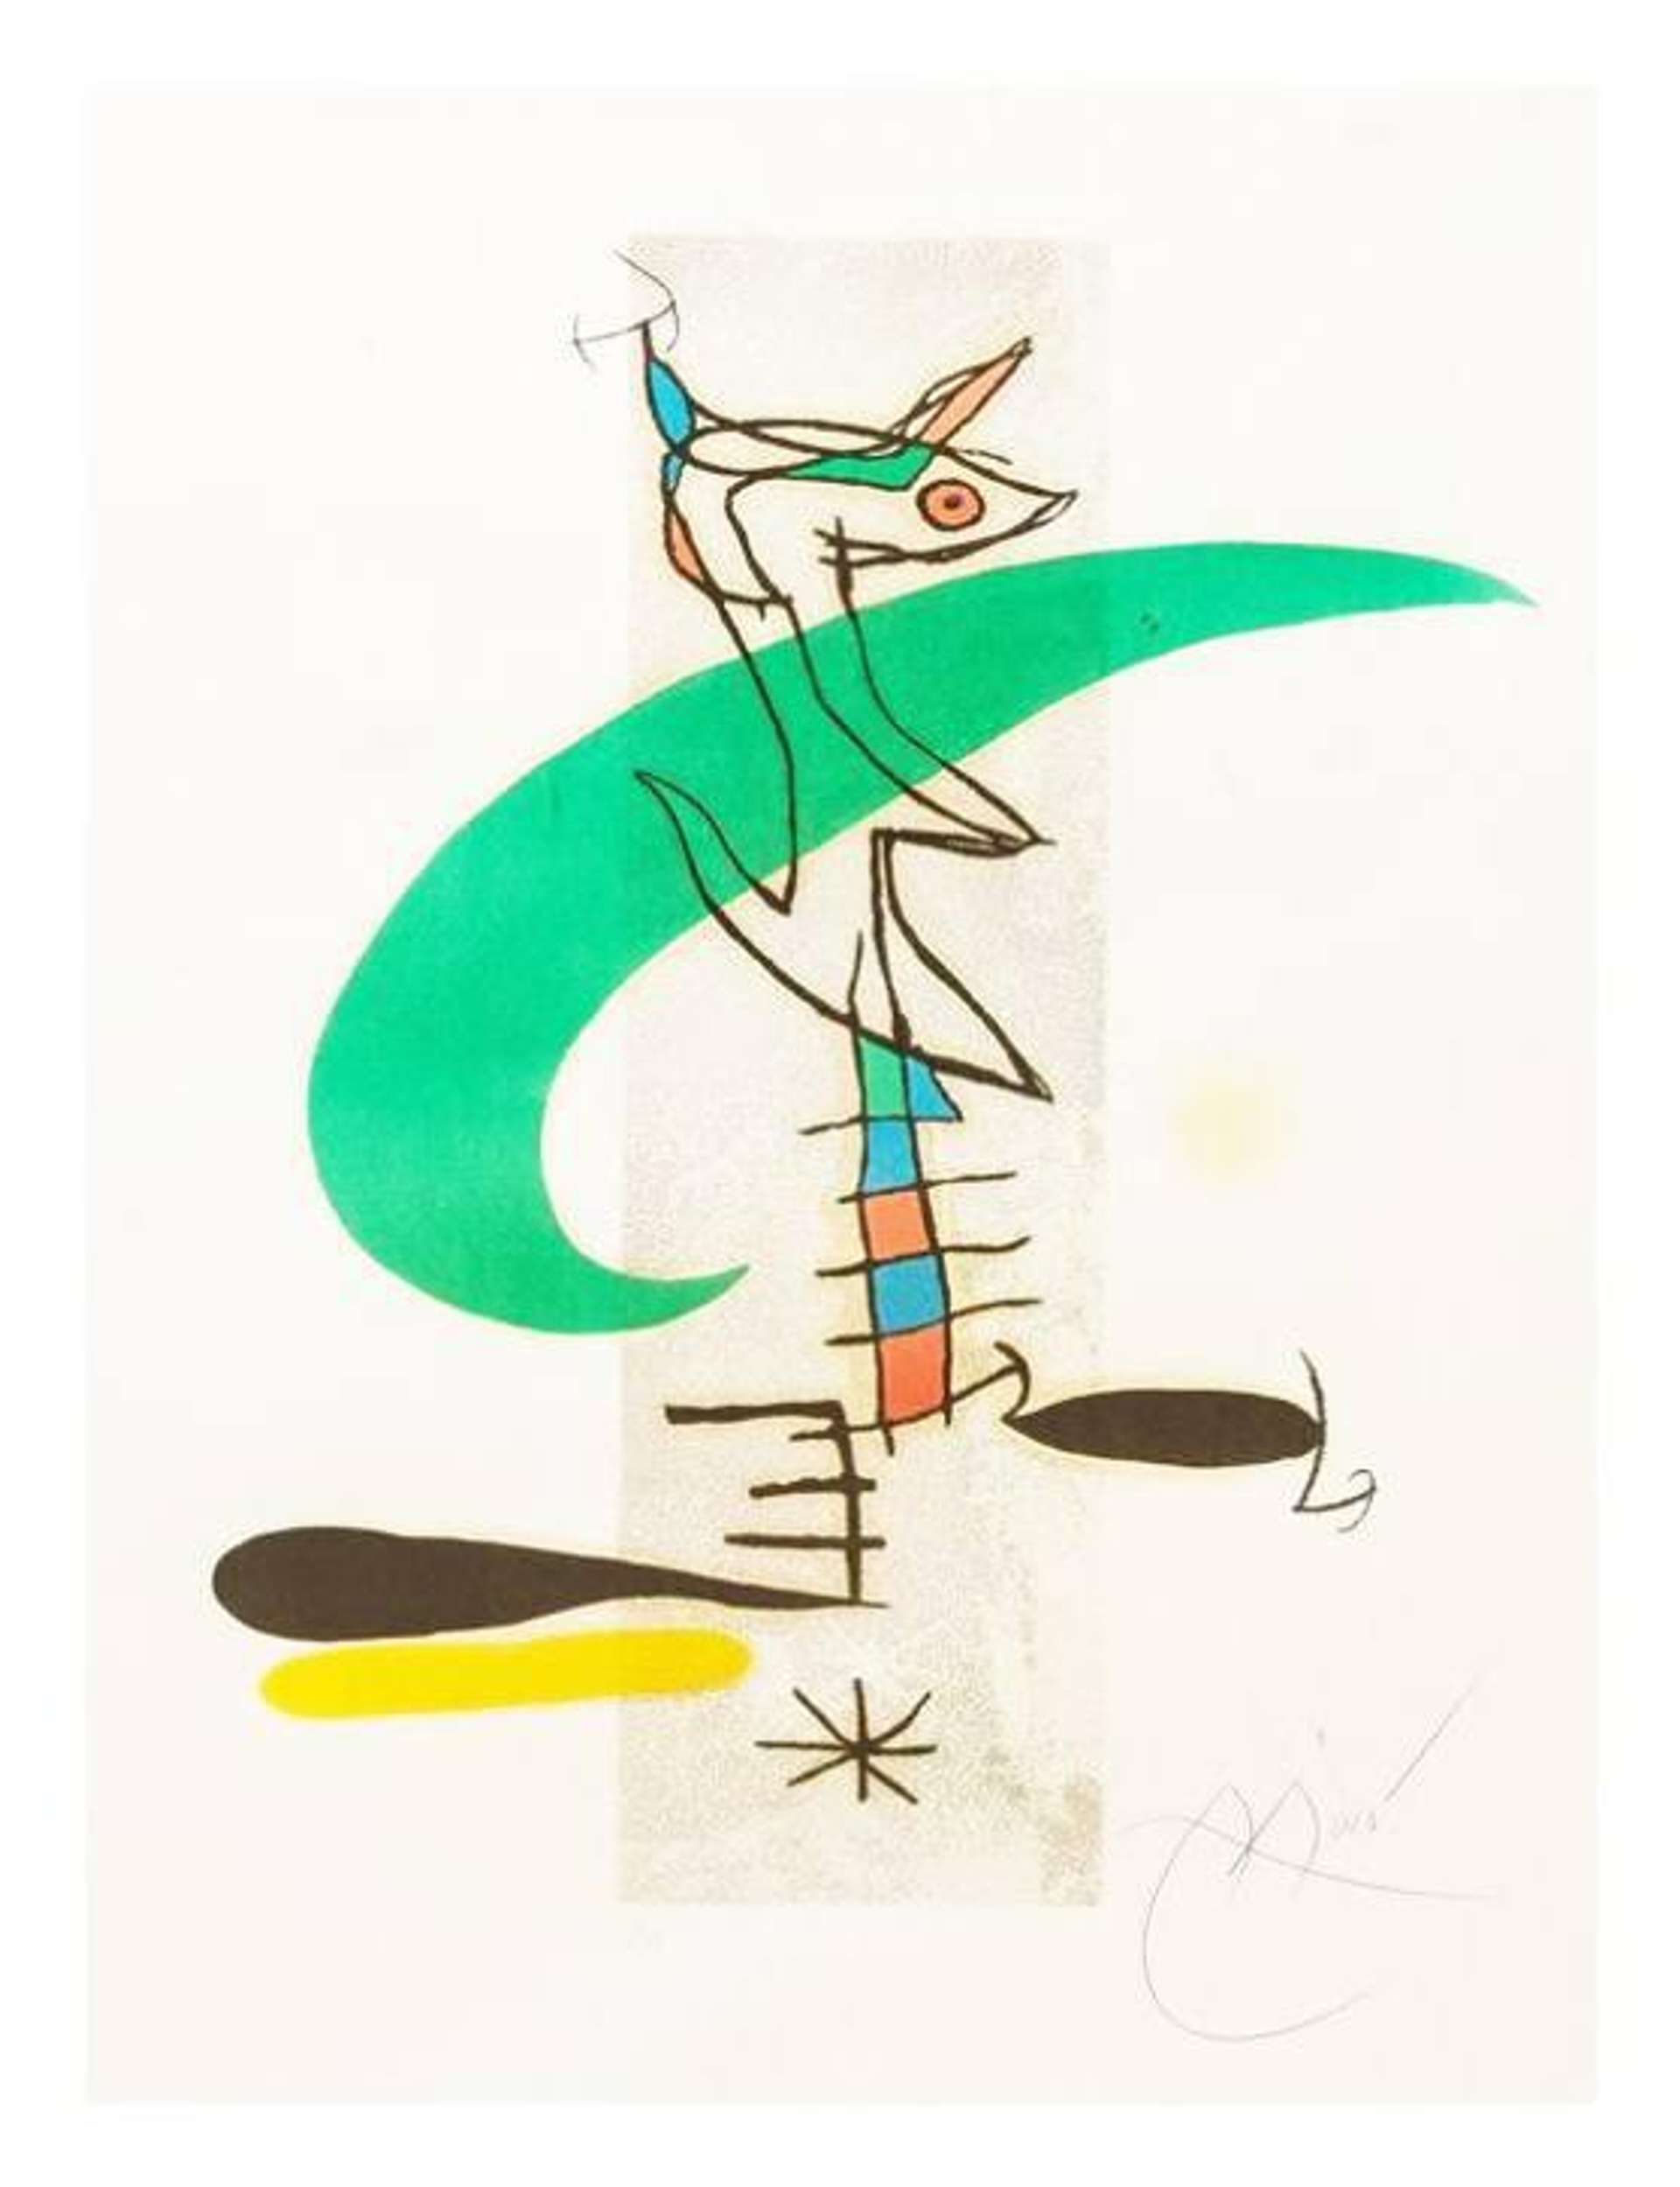 La Translunaire - Signed Print by Joan Miró 1974 - MyArtBroker